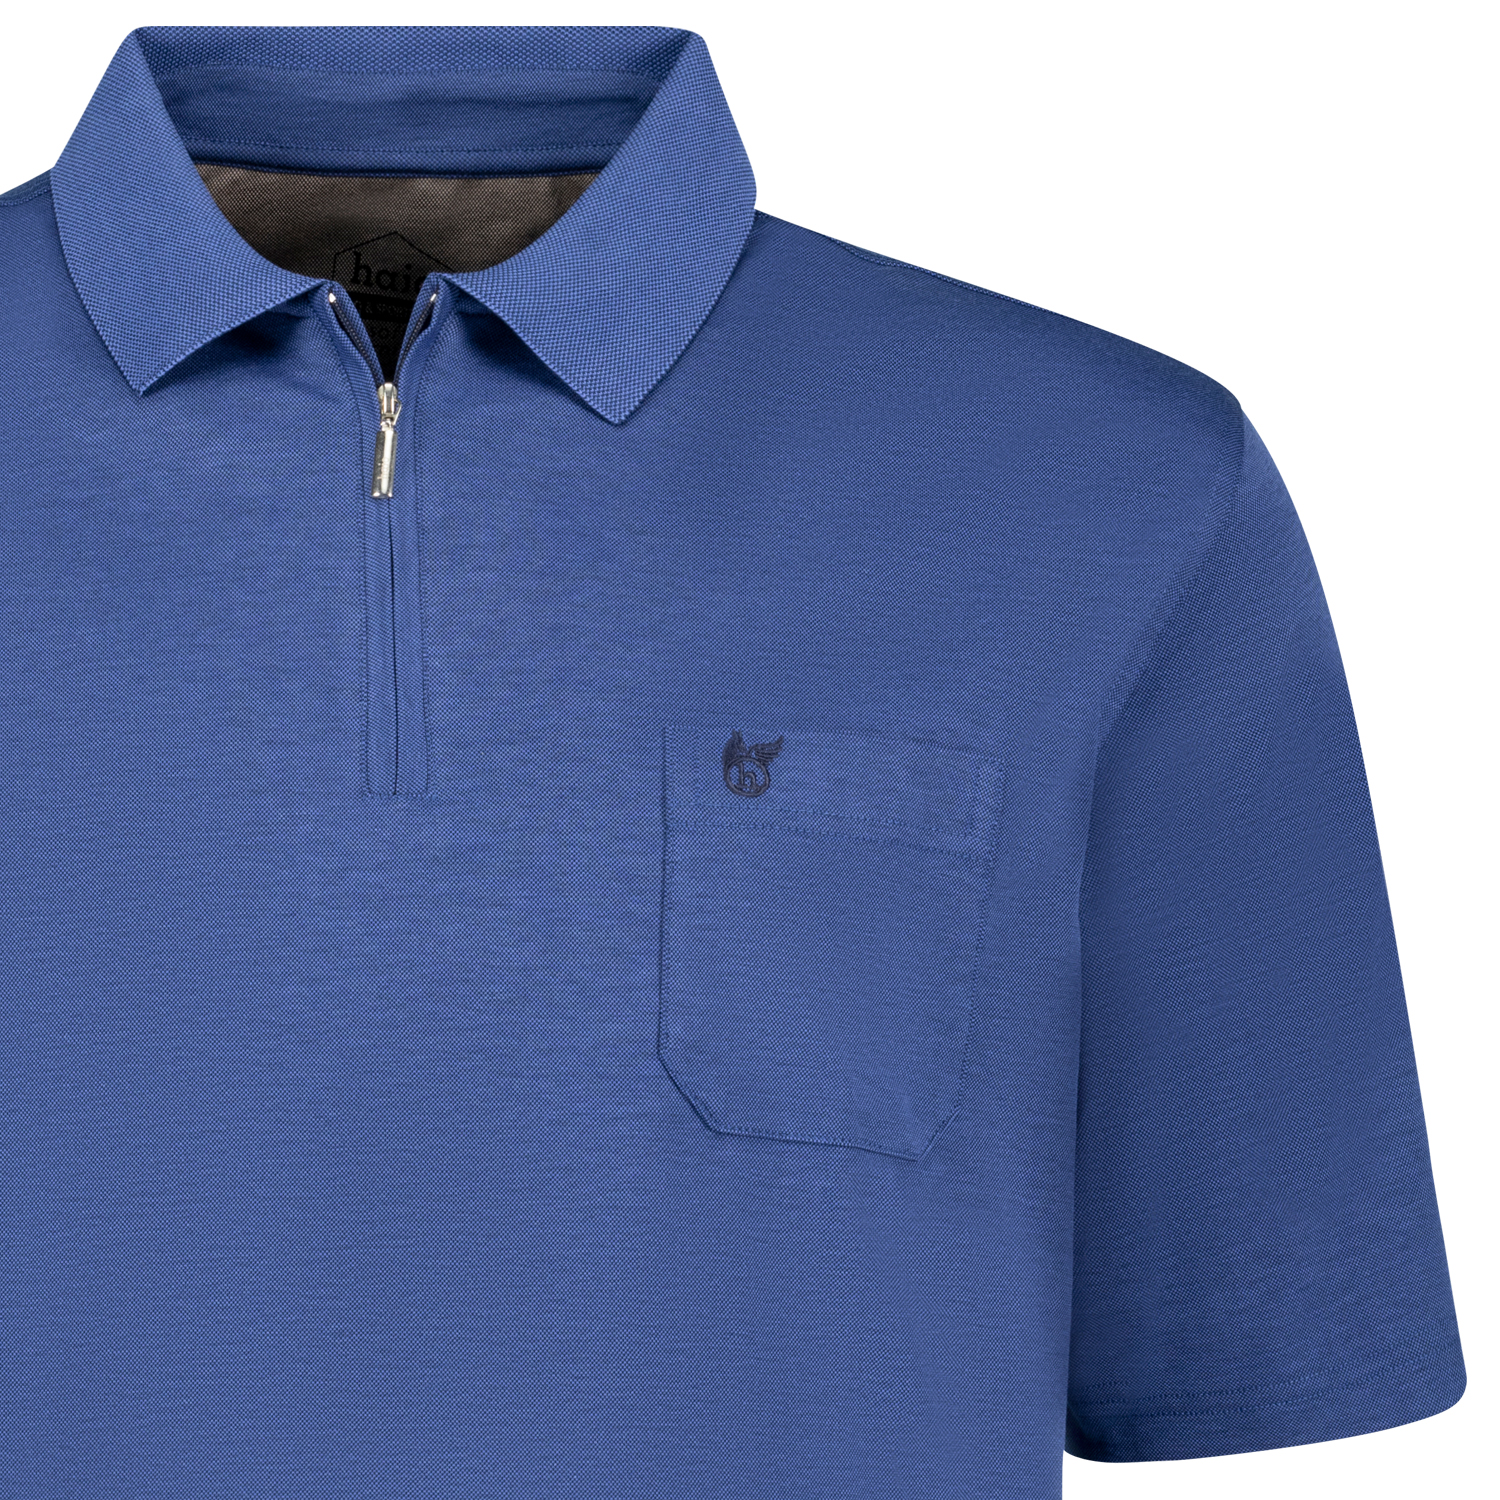 SOFTKNIT Kurzarm Poloshirt von hajo blau meliert bis Übergröße 6XL